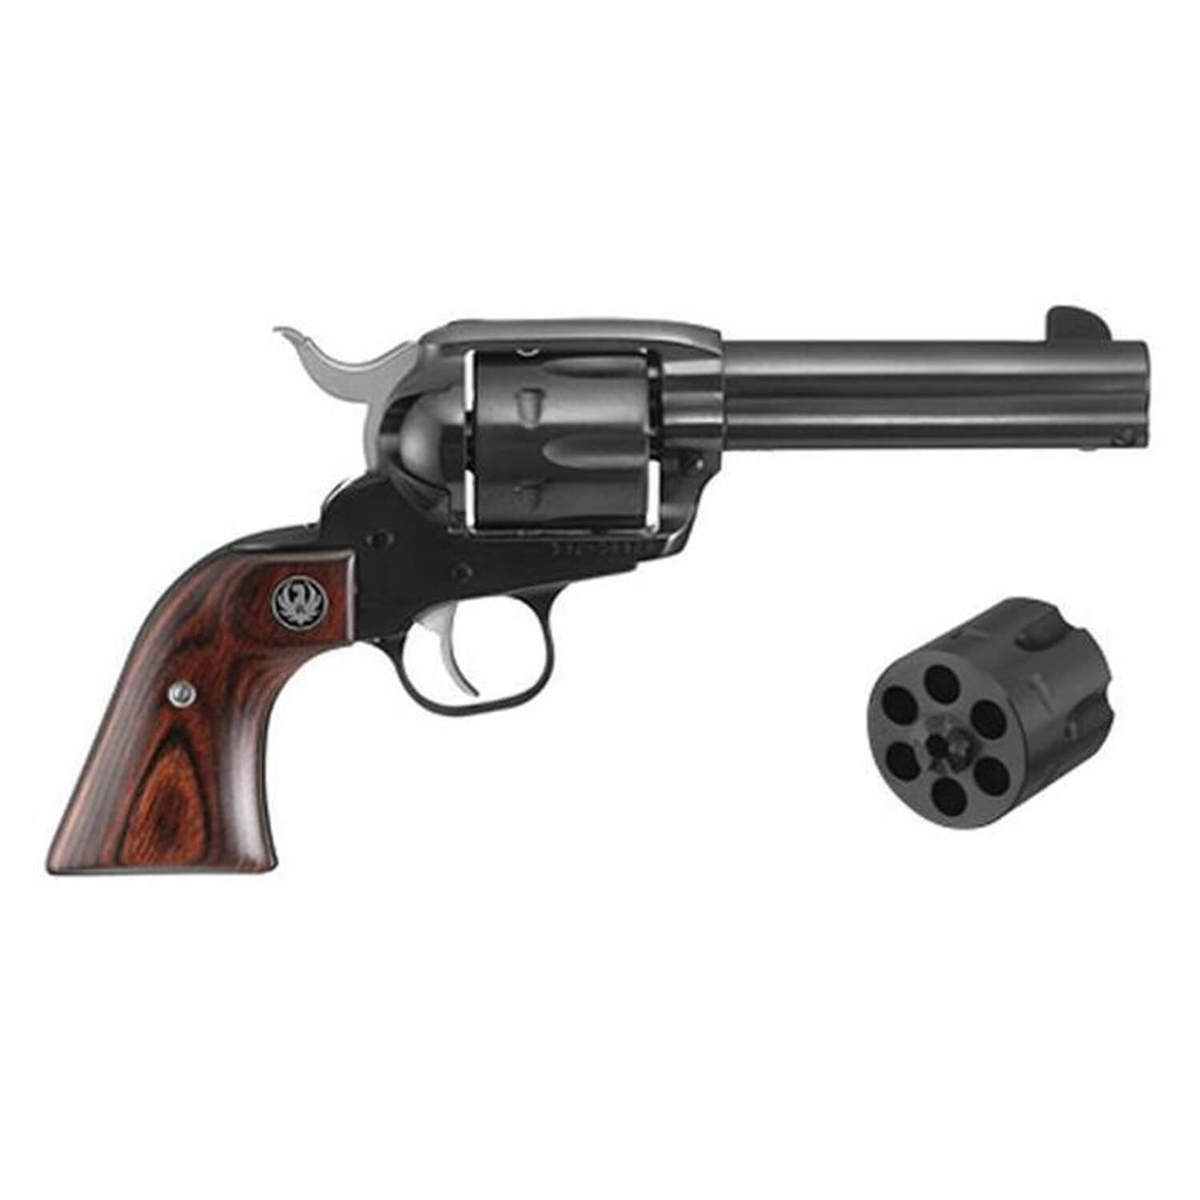 ruger-vaquero-357-magnum9mm-luger-462in-blued-revolver-6-rounds-1503630-1.jpg